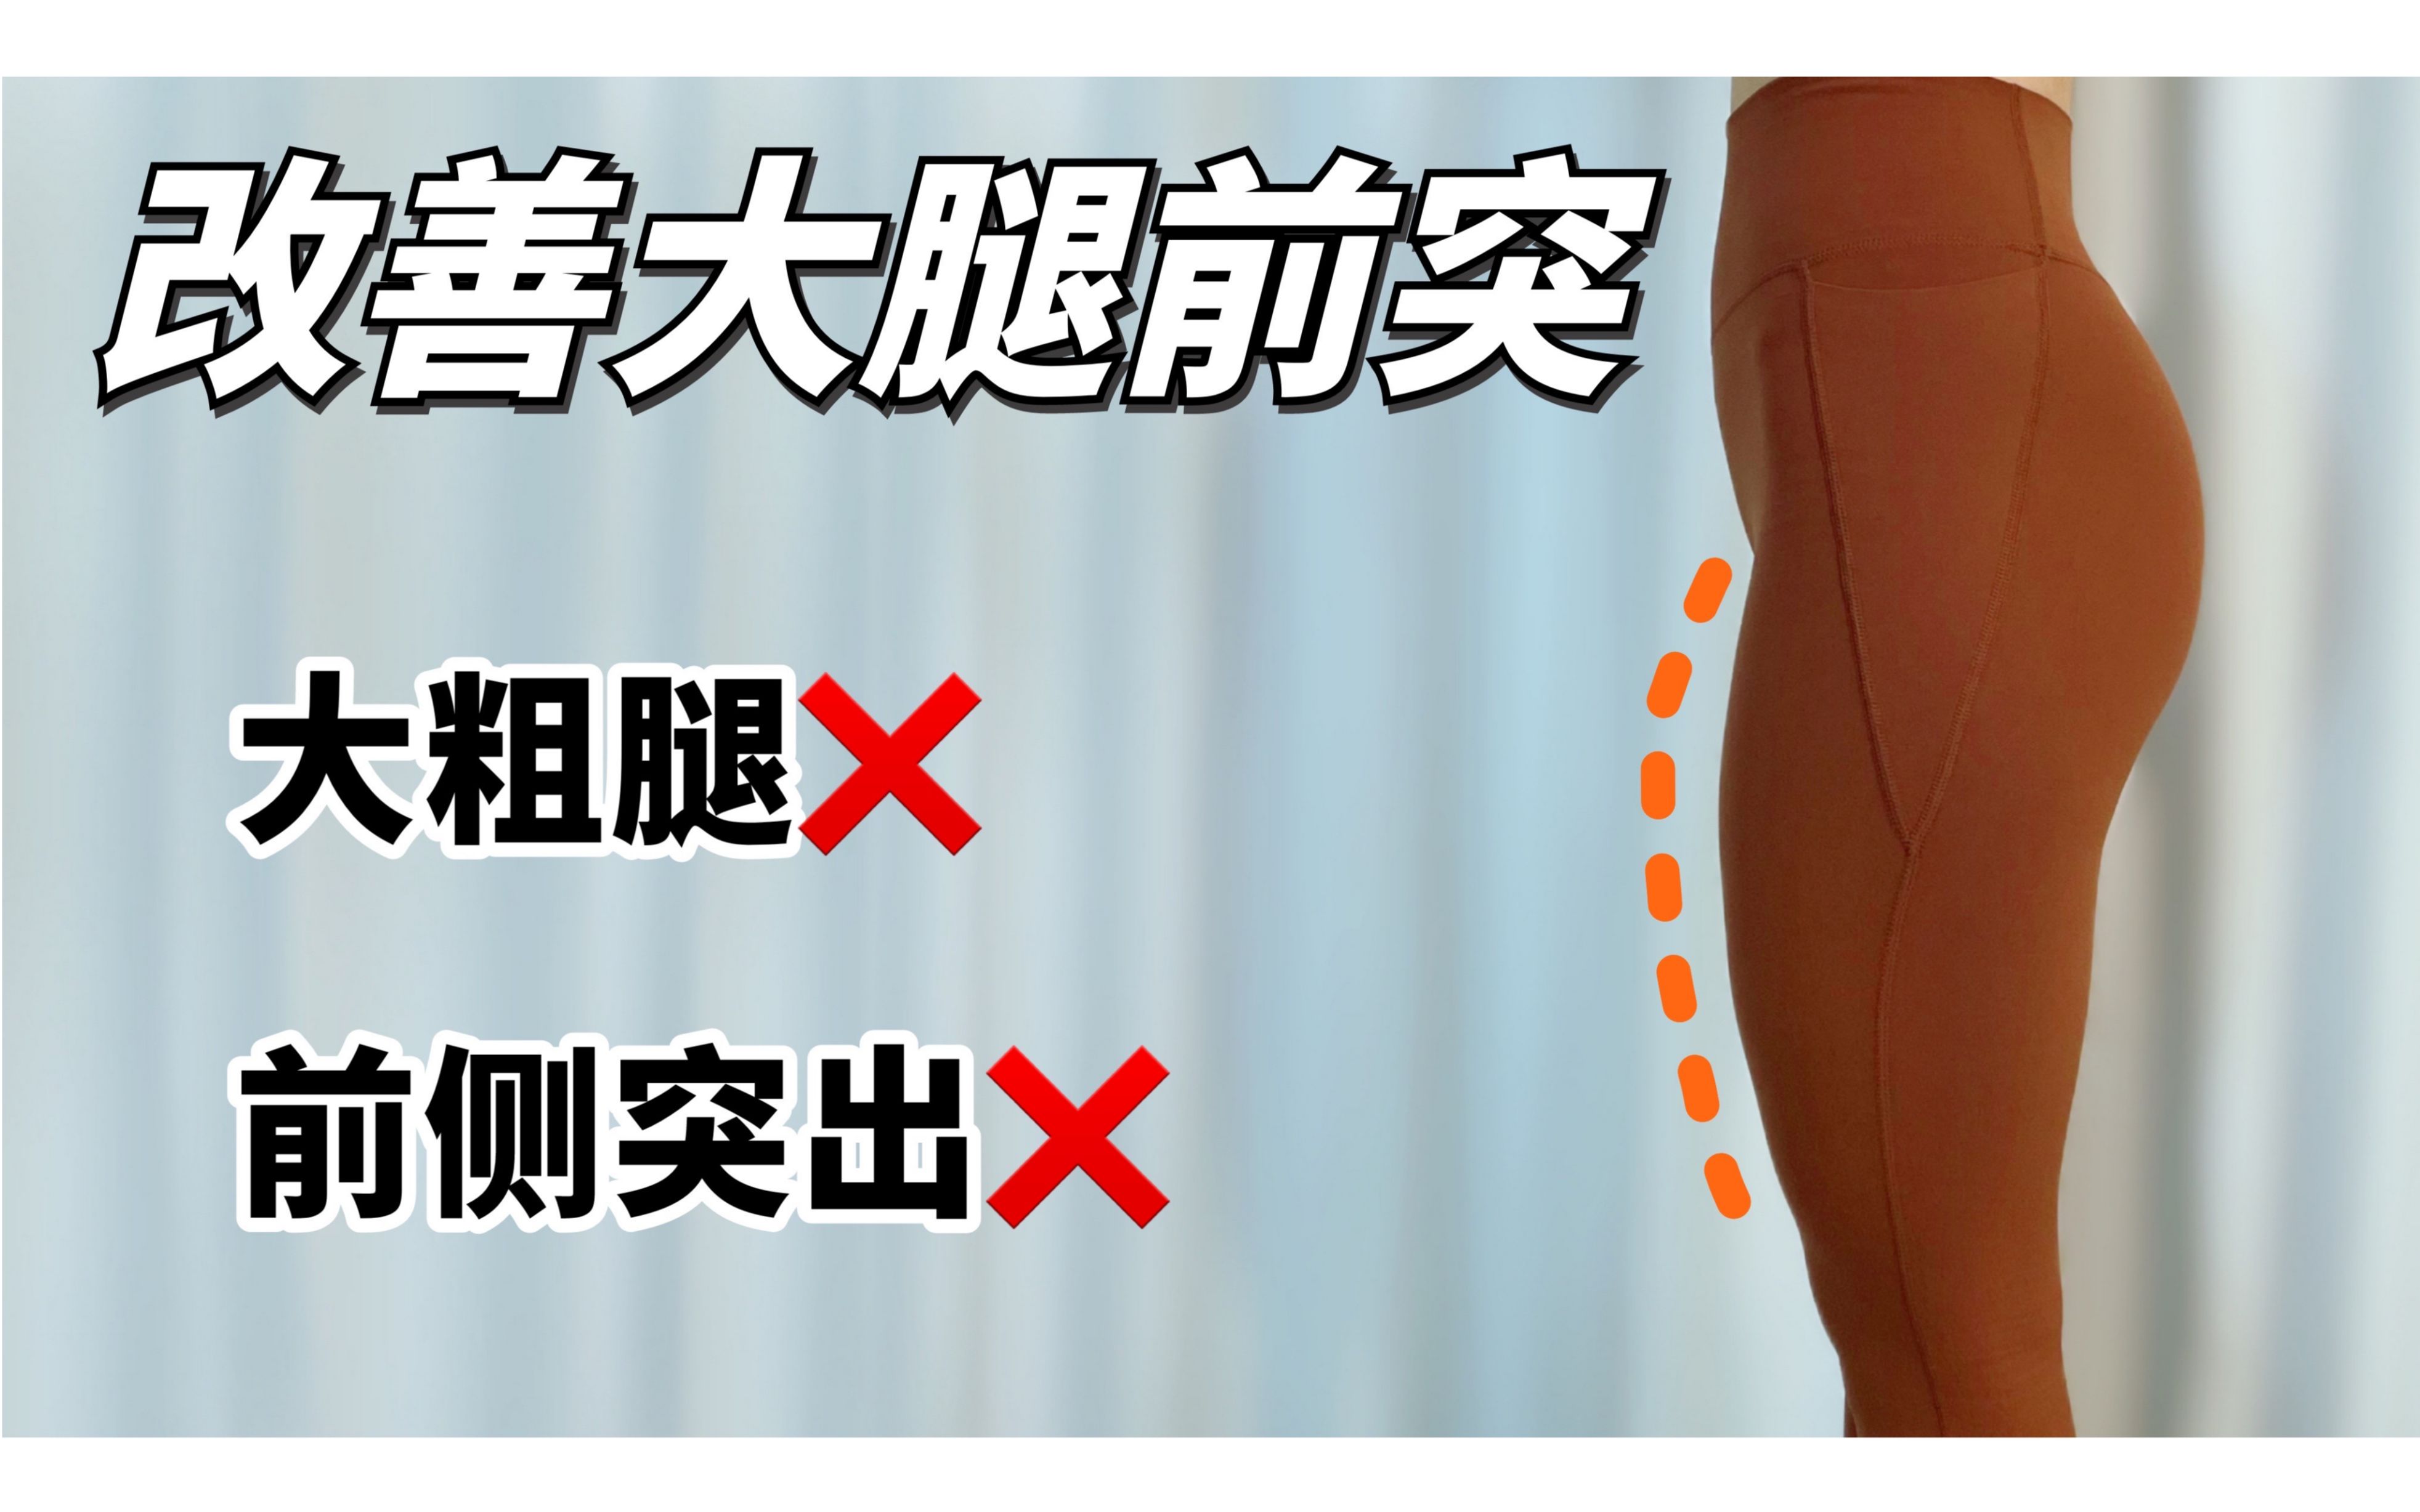 安卓系统瘦腿APP选择指南，助力女性追求美腿梦想  第7张